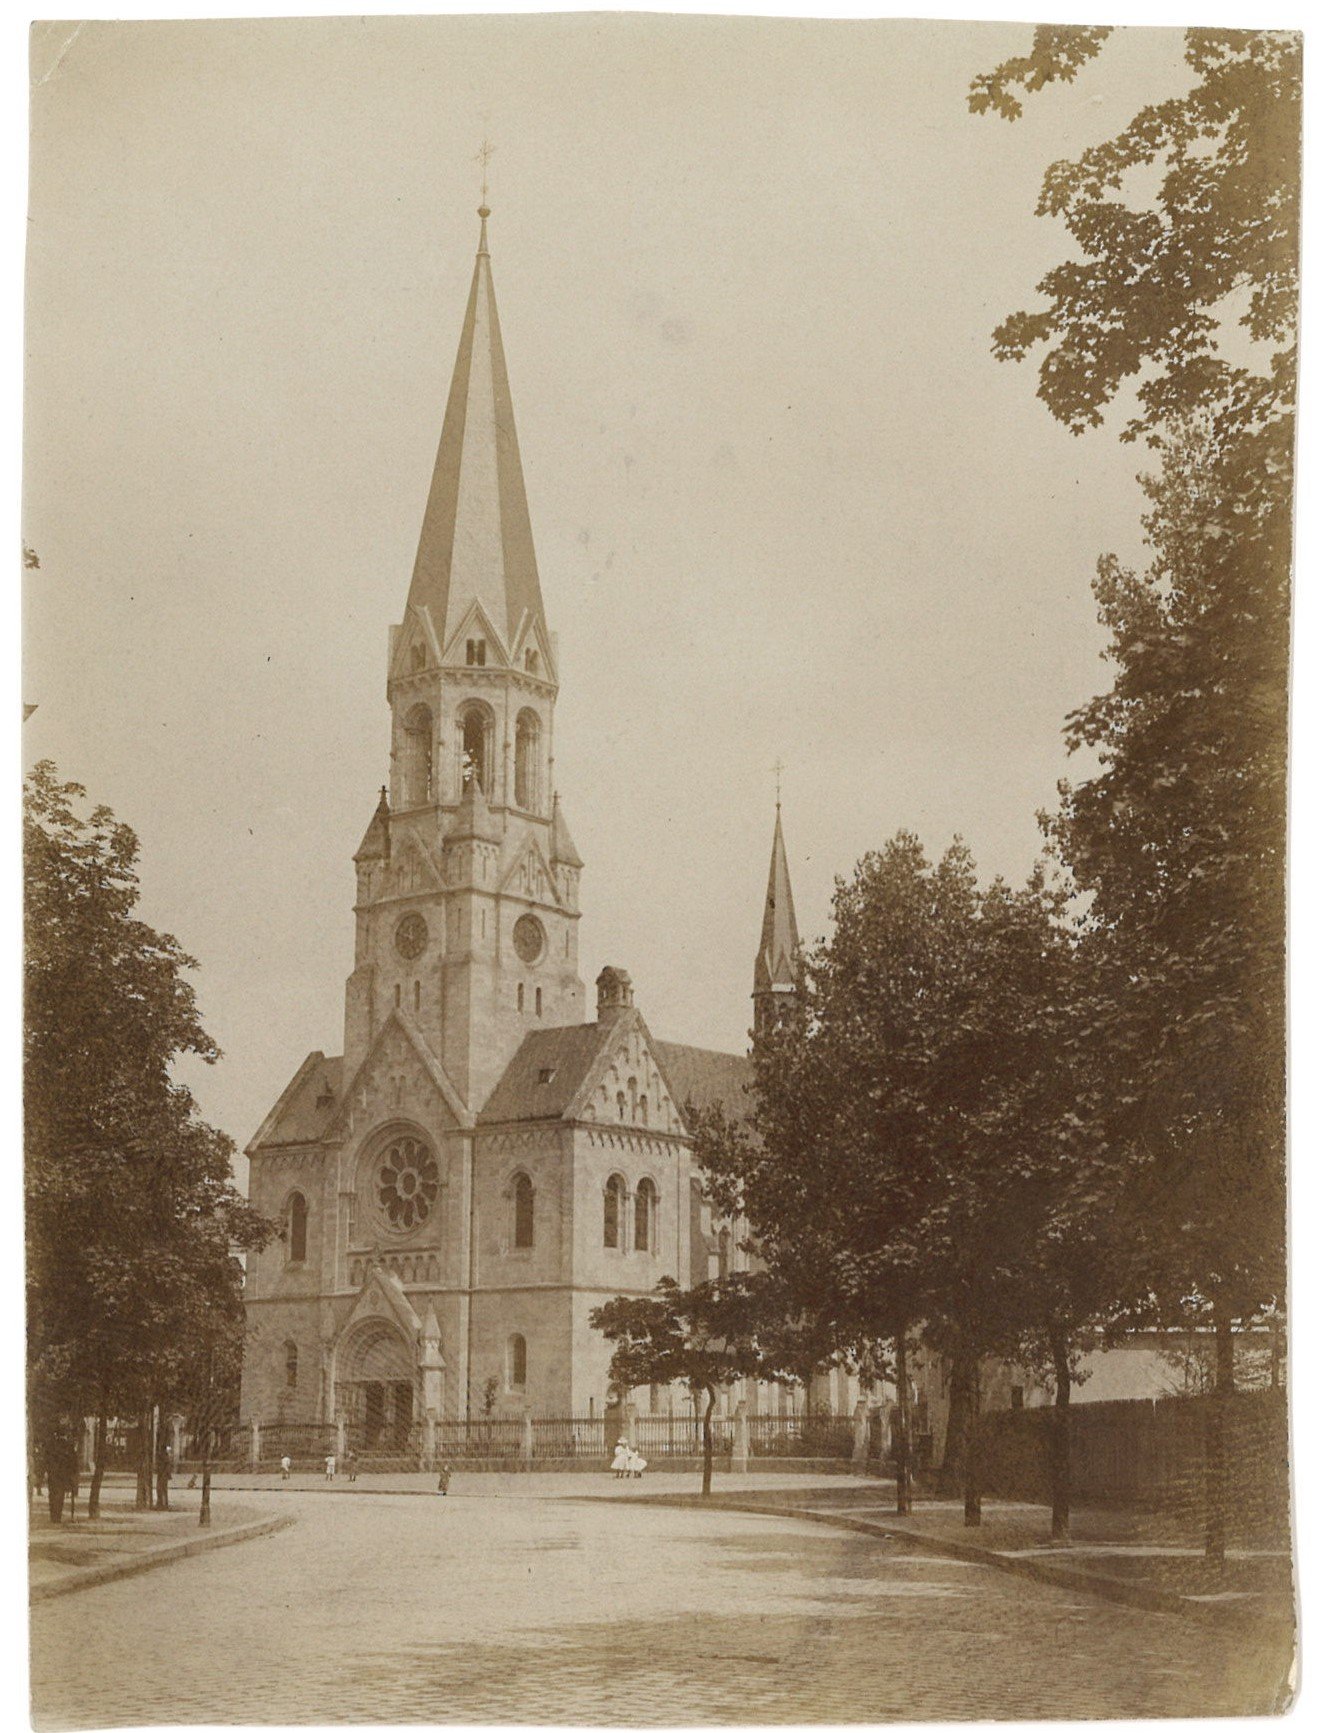 Berlin-Neukölln: Katholische Garnisonkirche von Südwesten (Landesgeschichtliche Vereinigung für die Mark Brandenburg e.V., Archiv CC BY)